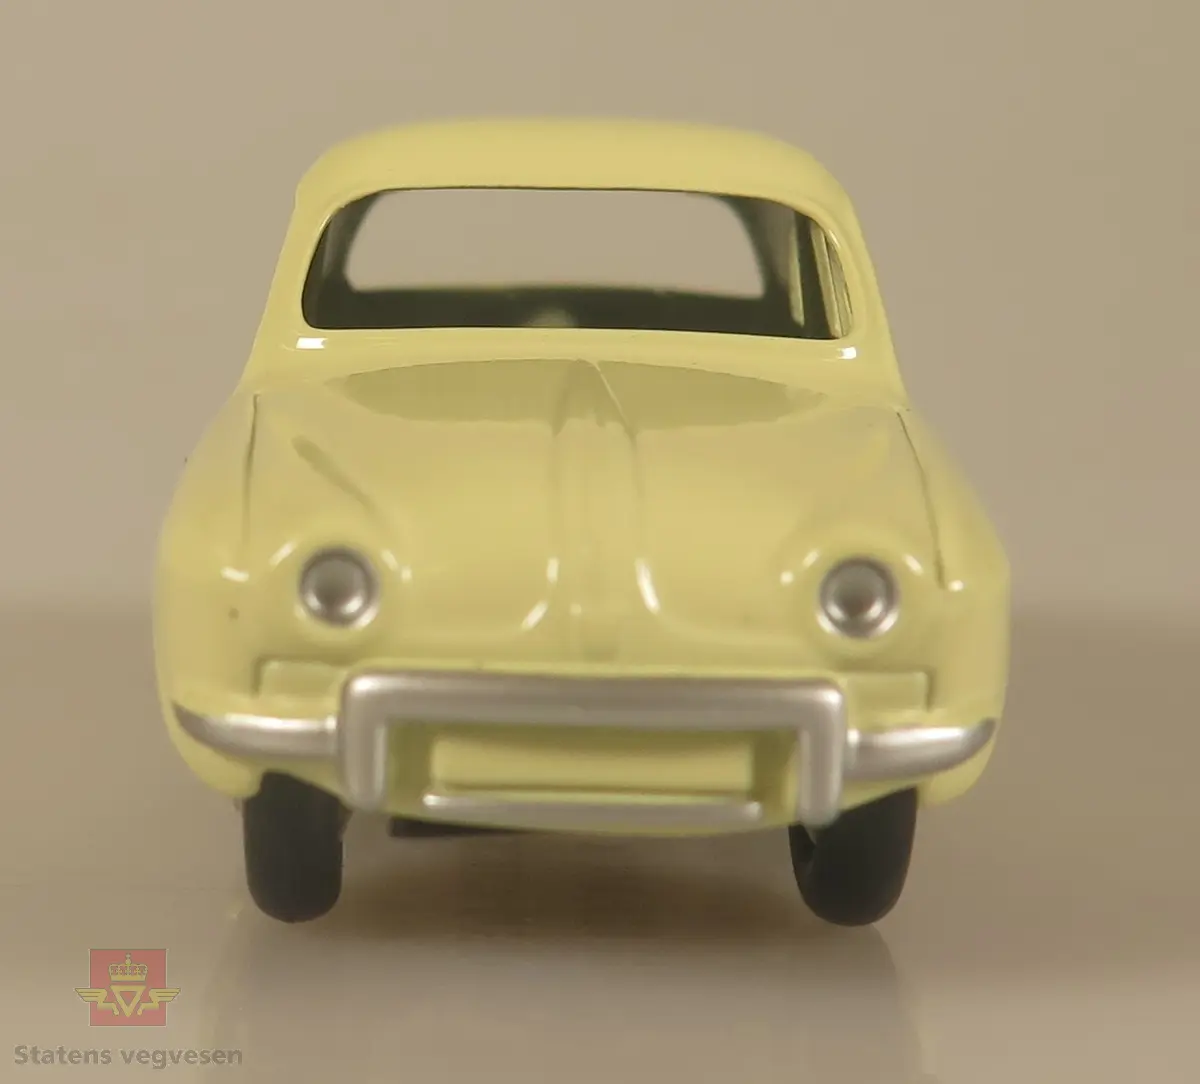 En liten gul modellbil, med kromfarget metallribbe på baksiden av døren.